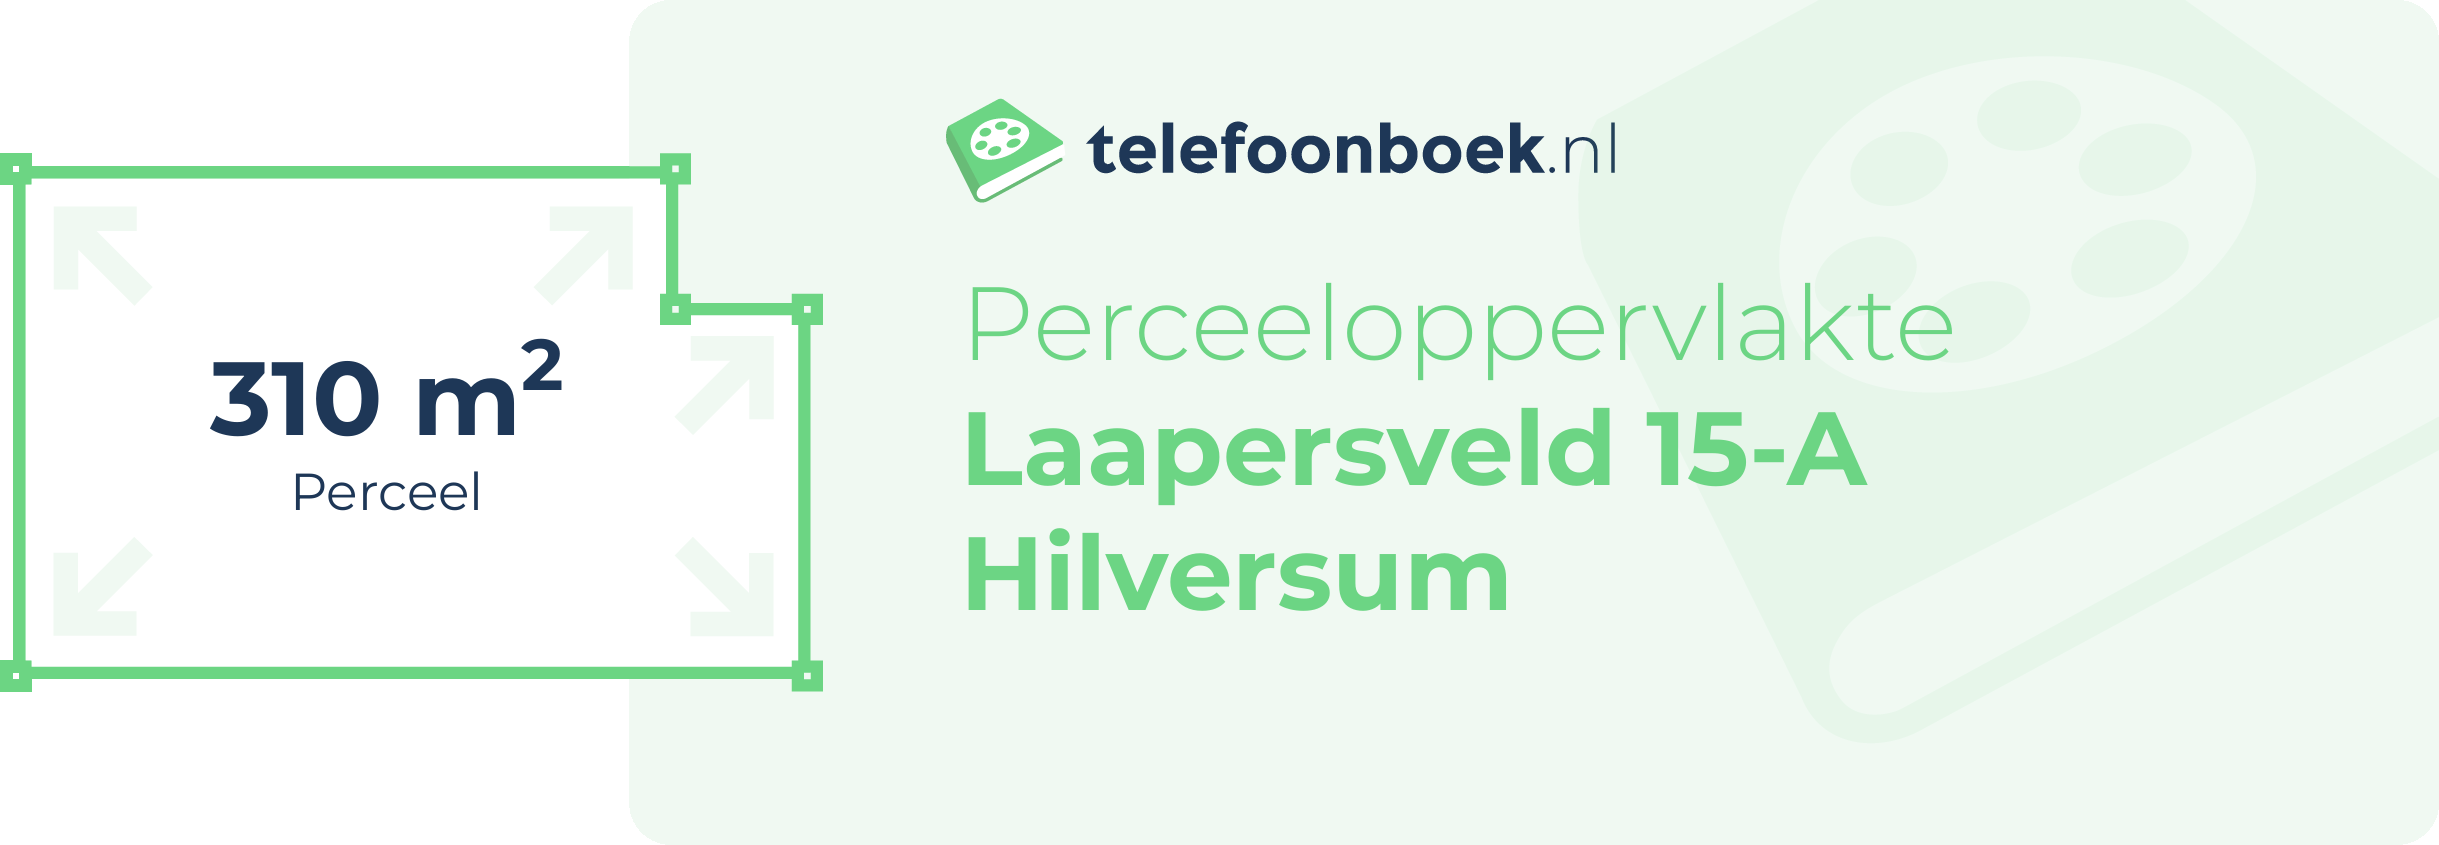 Perceeloppervlakte Laapersveld 15-A Hilversum